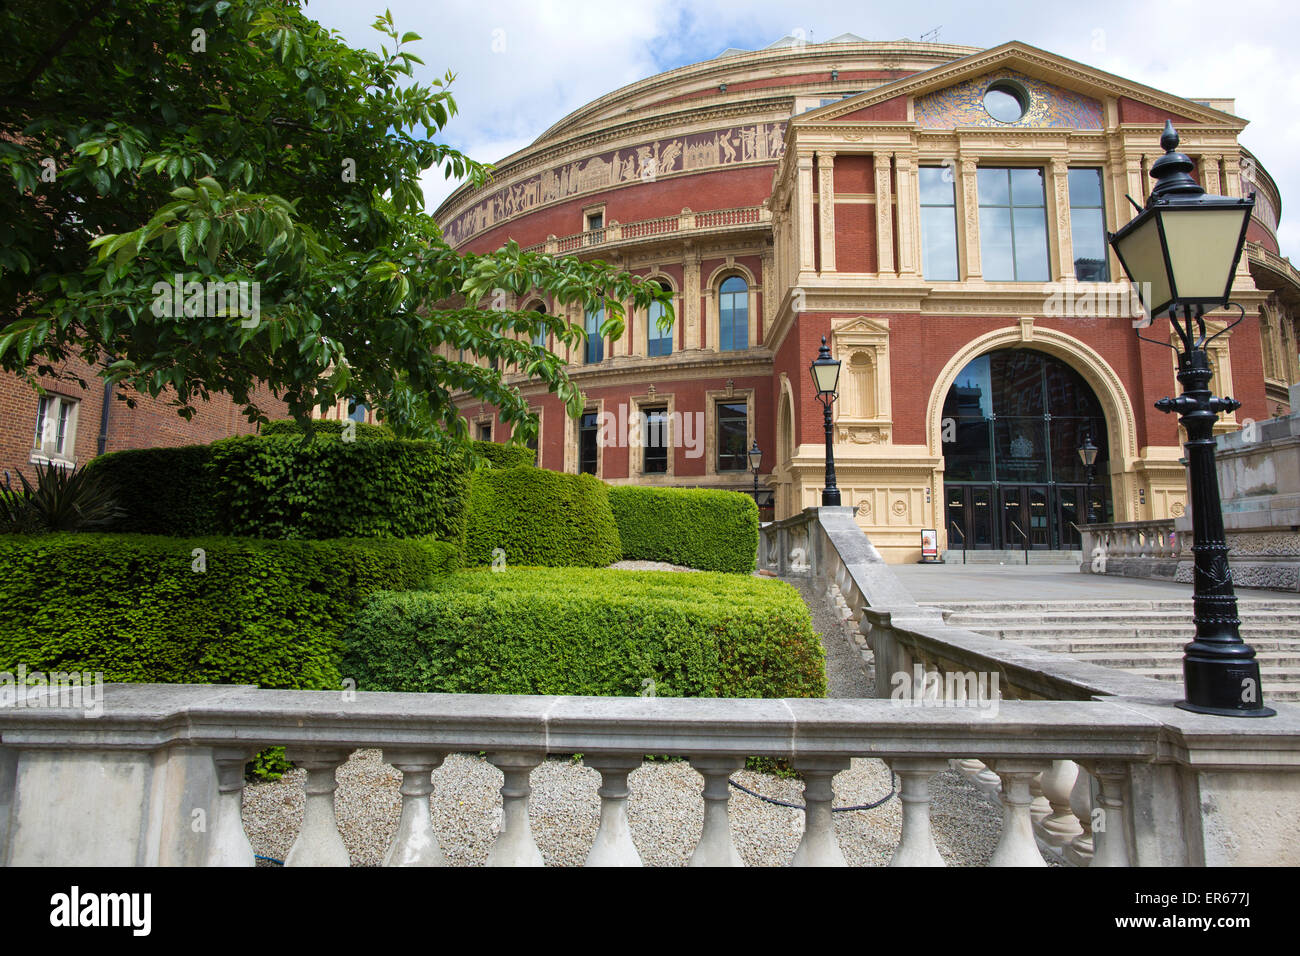 Royal Albert Hall concert Hall, South Kensington, London, England, UK Stockfoto